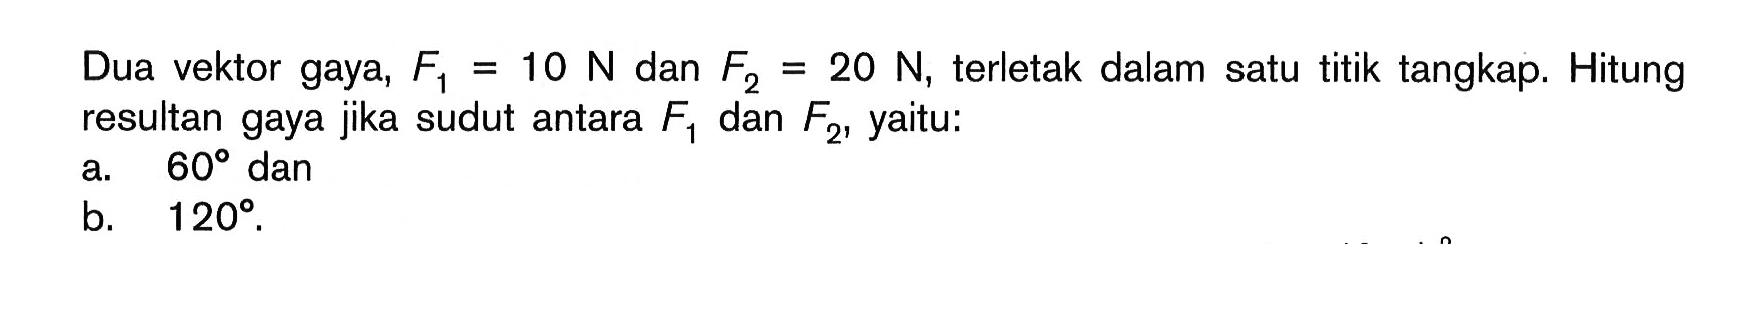 Dua vektor gaya, F1 = 10 N dan F2 = 20 N, terletak dalam satu titik tangkap. Hitung resultan gaya jika sudut antara F1 dan yaitu: a. 60 dan b. 120.